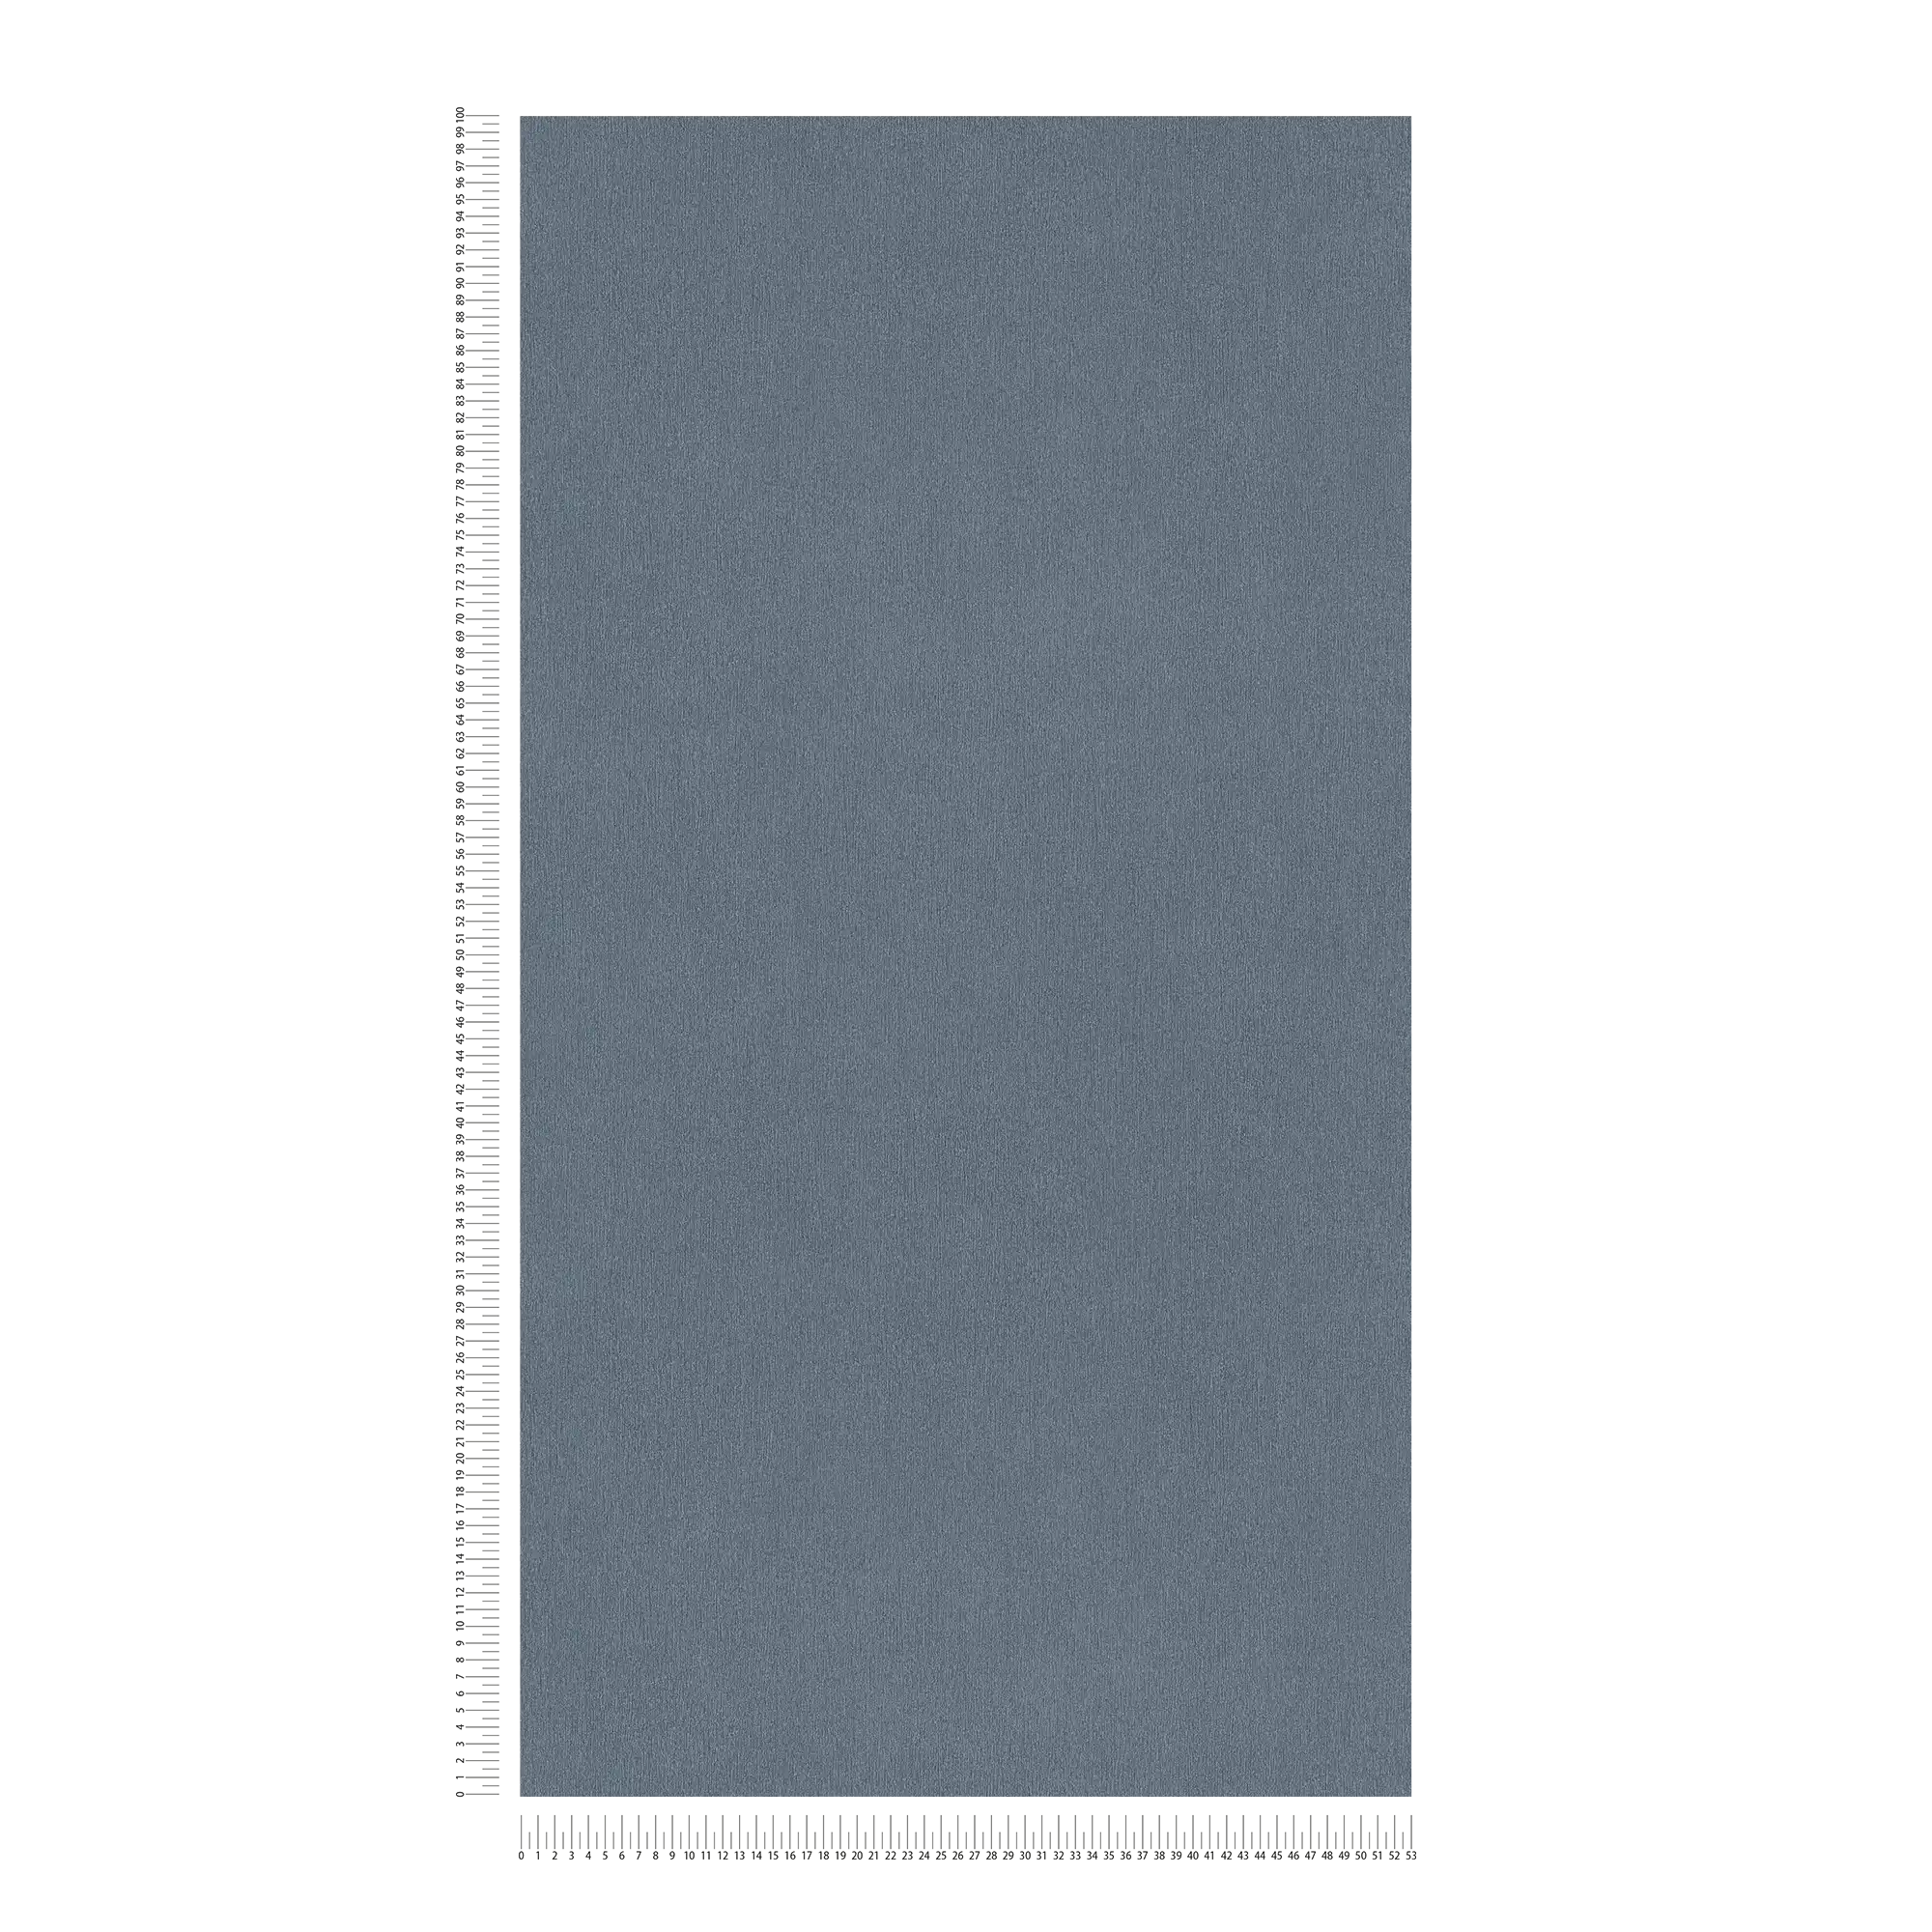             Carta da parati grigio scuro in tessuto non tessuto, monocolore con tratteggio a colori
        